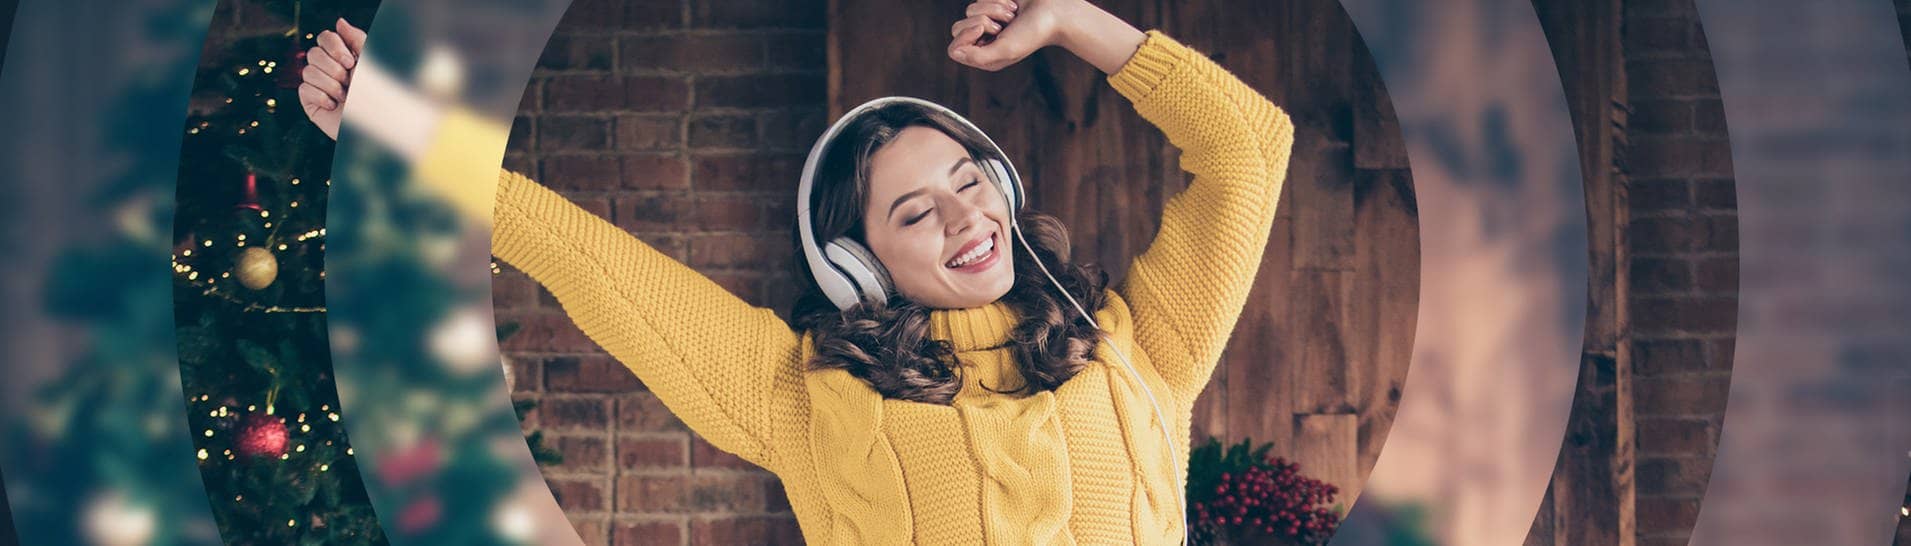 Eine junge Frau in einem gelben Pullover tanzt vor einem Weihnachtsbaum und hört Musik mit Kopfhörern.